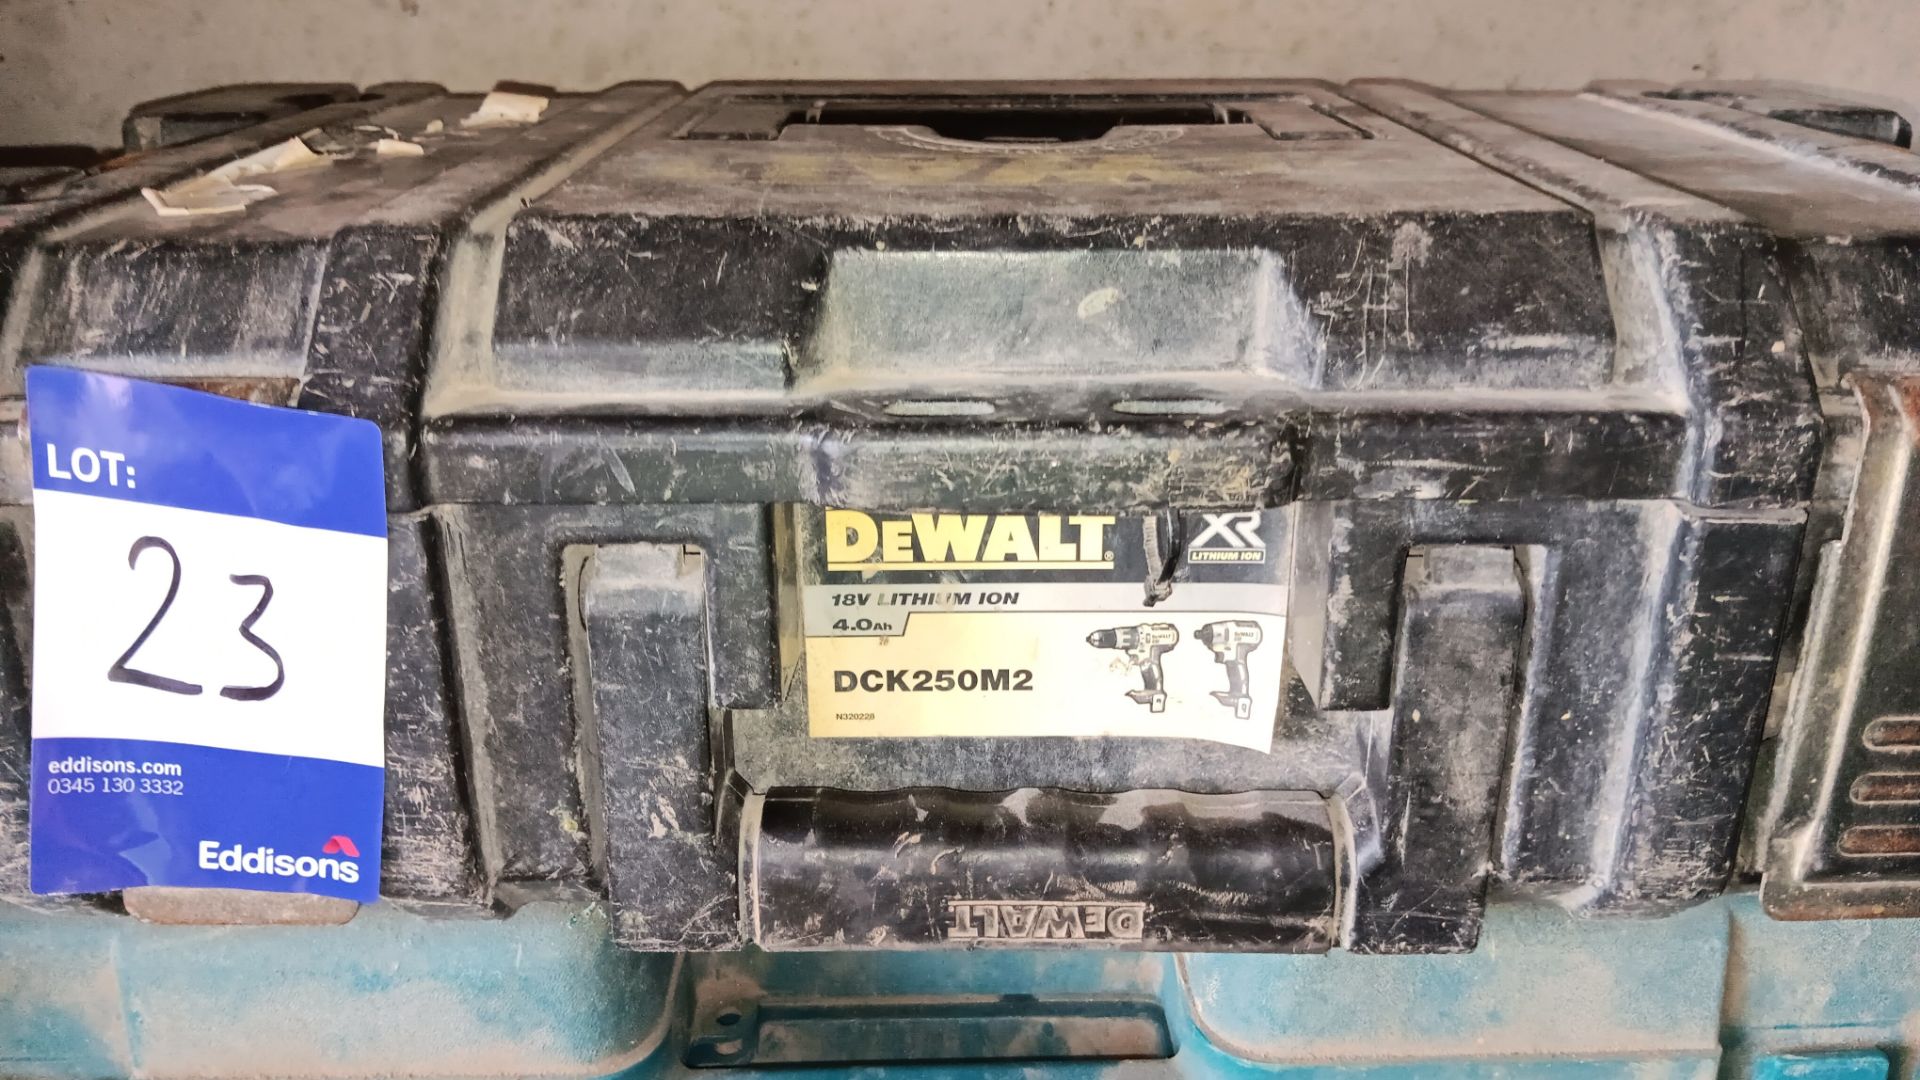 Dewalt DCK250M2 18v 4.0Ah 2 drill set with case and 1 battery - Image 4 of 4